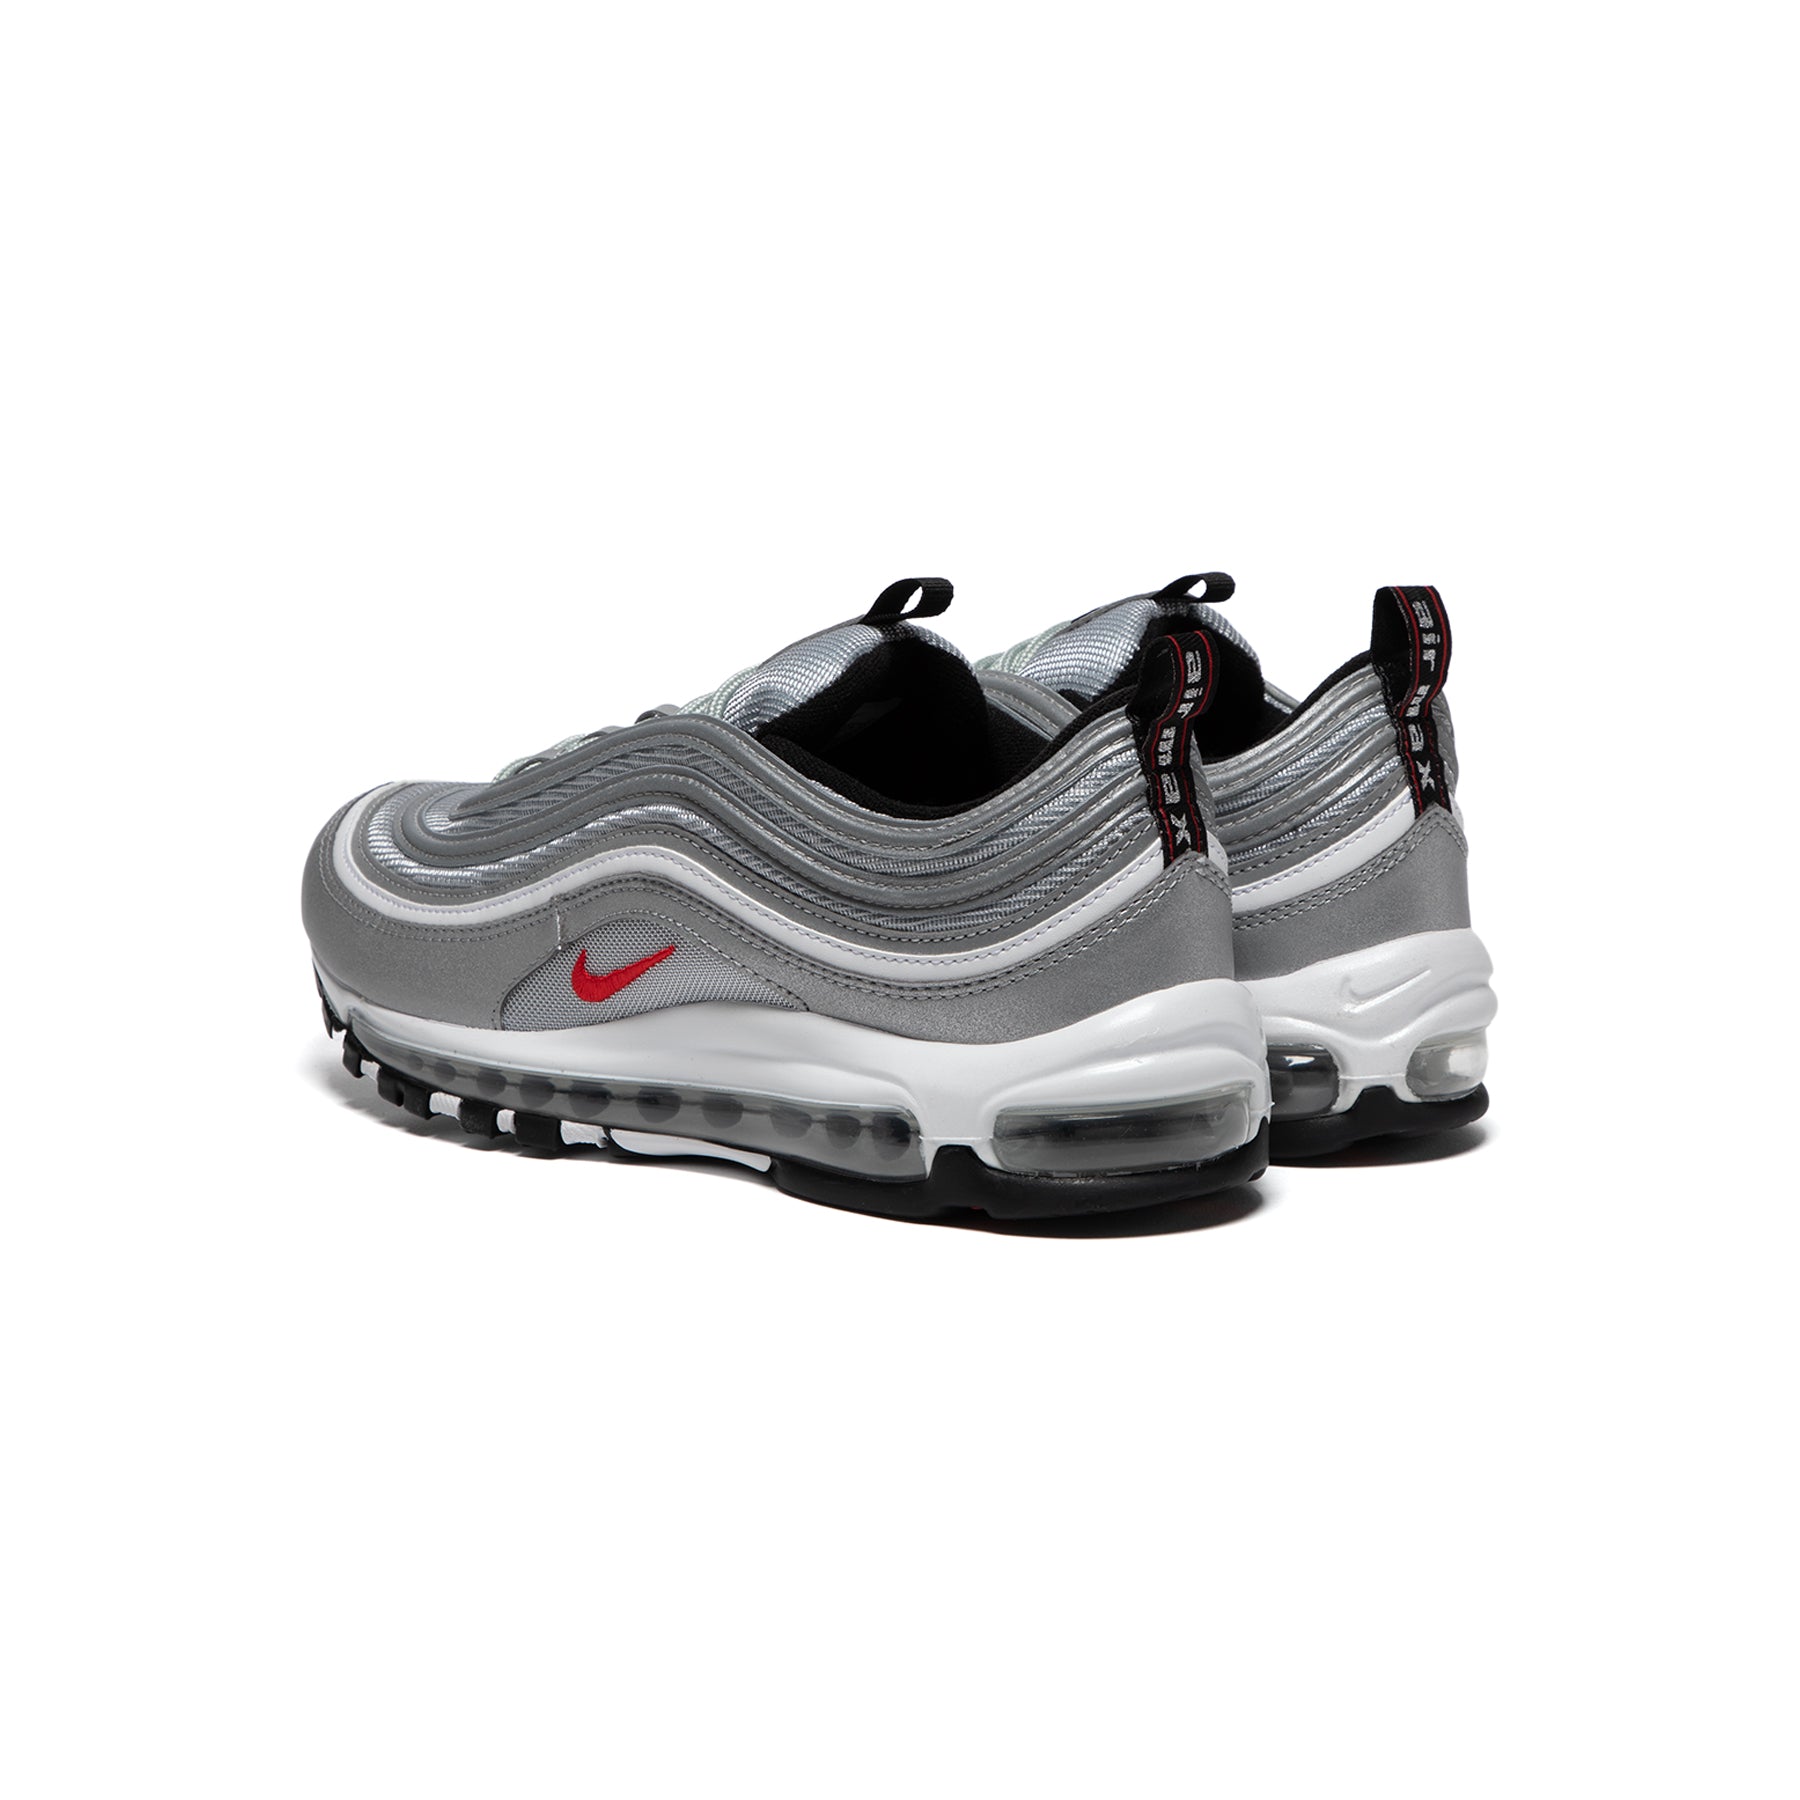 Nike 97 OG (Metallic Silver/University Red/Black) –